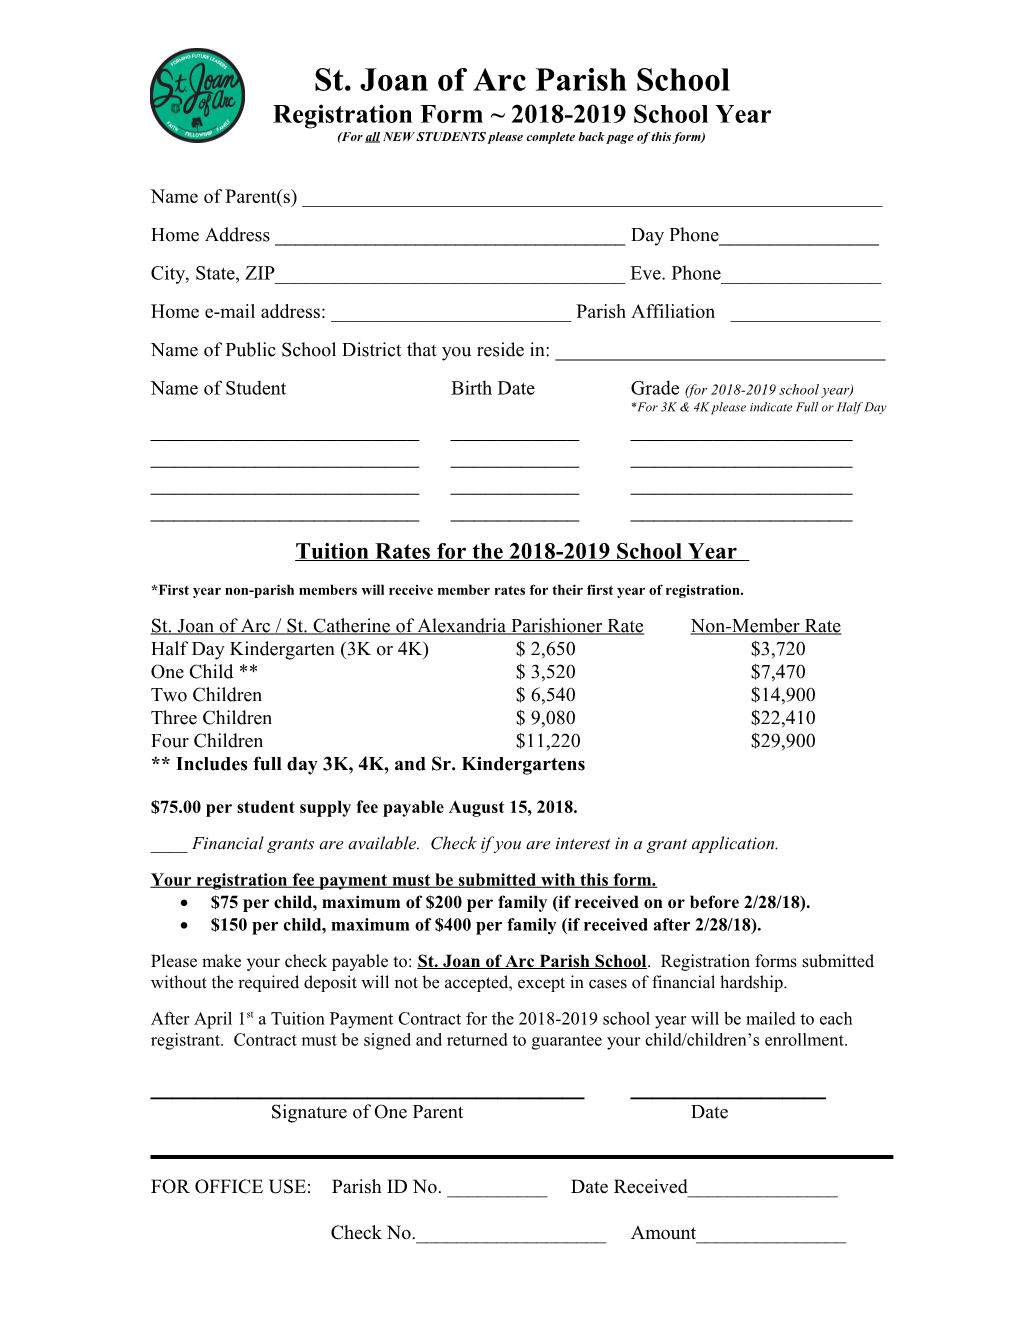 Registration Form 2018-2019 School Year